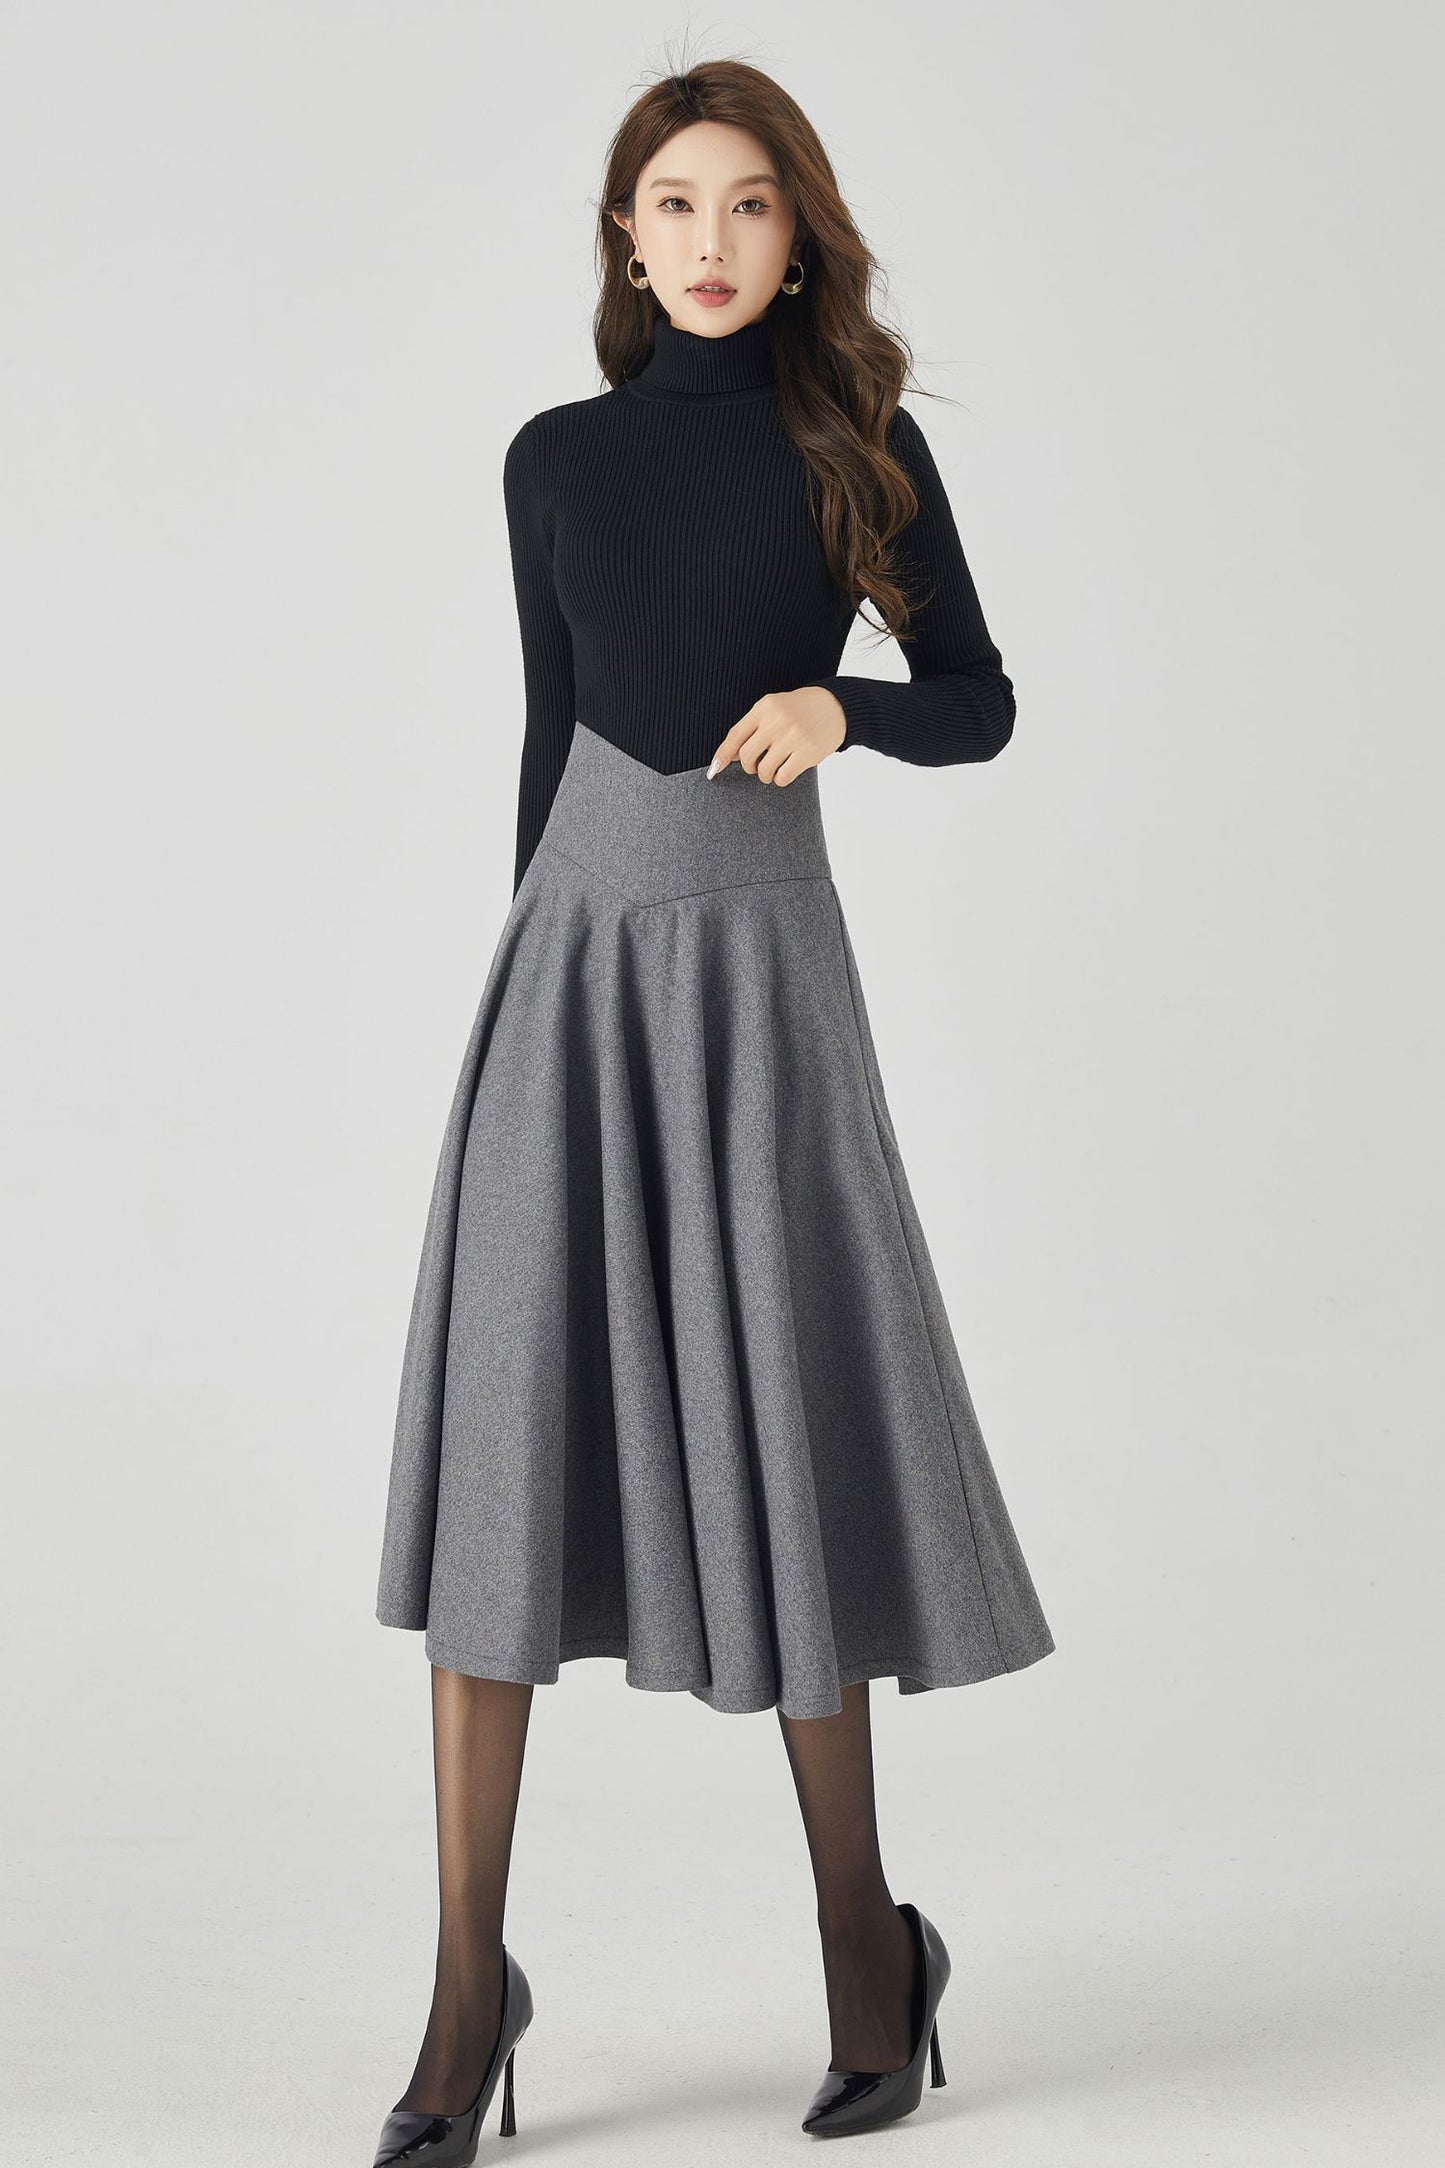 Winter High Waist Circle Wool Skirt 4534